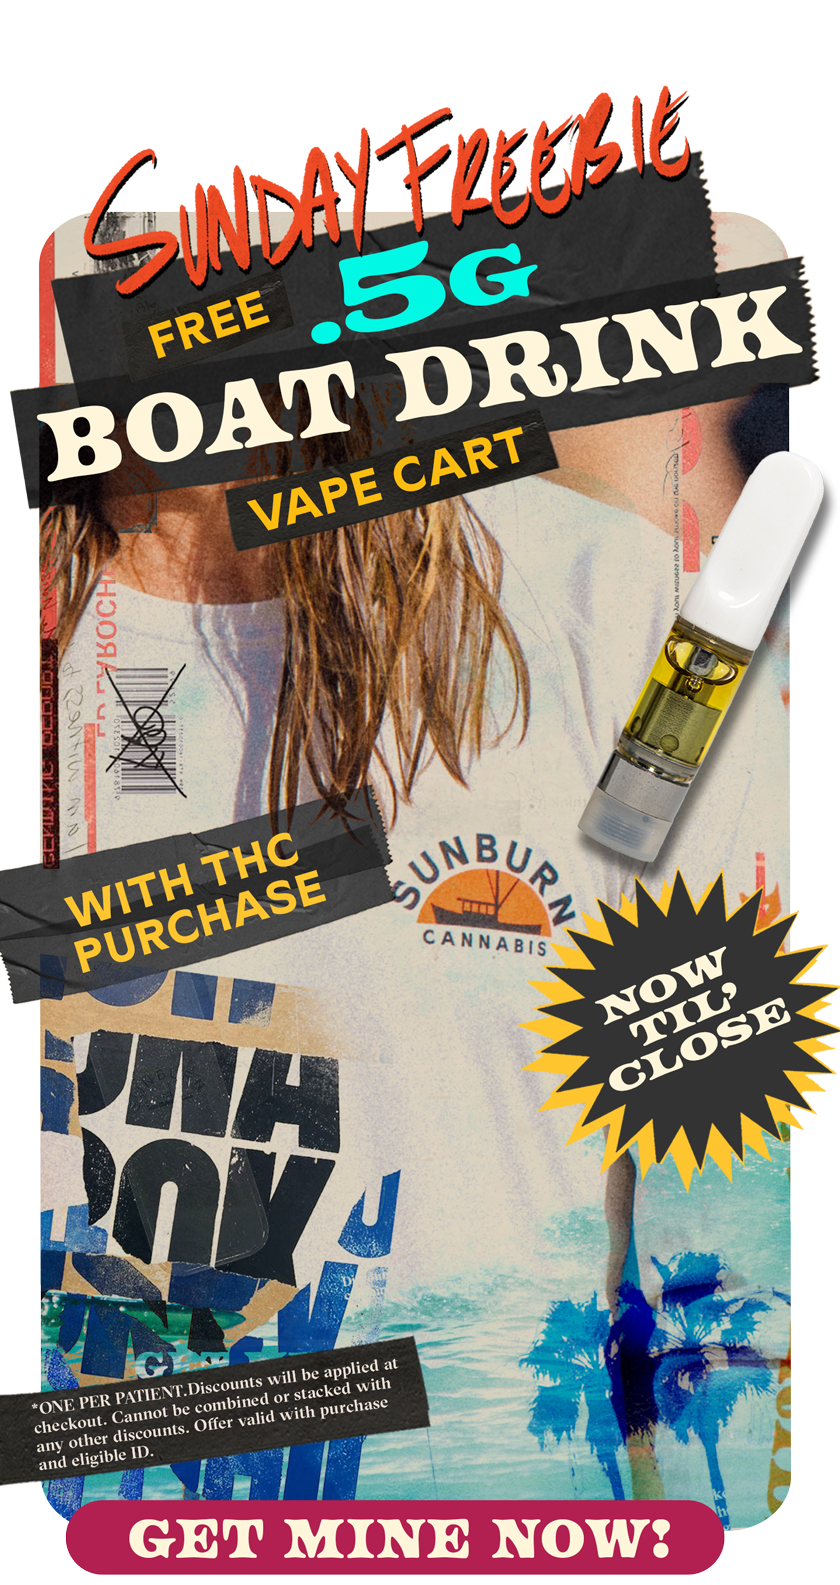 Sunday Freebie Free Boat Drink Cart With THC Purchase MayWeek2 v2